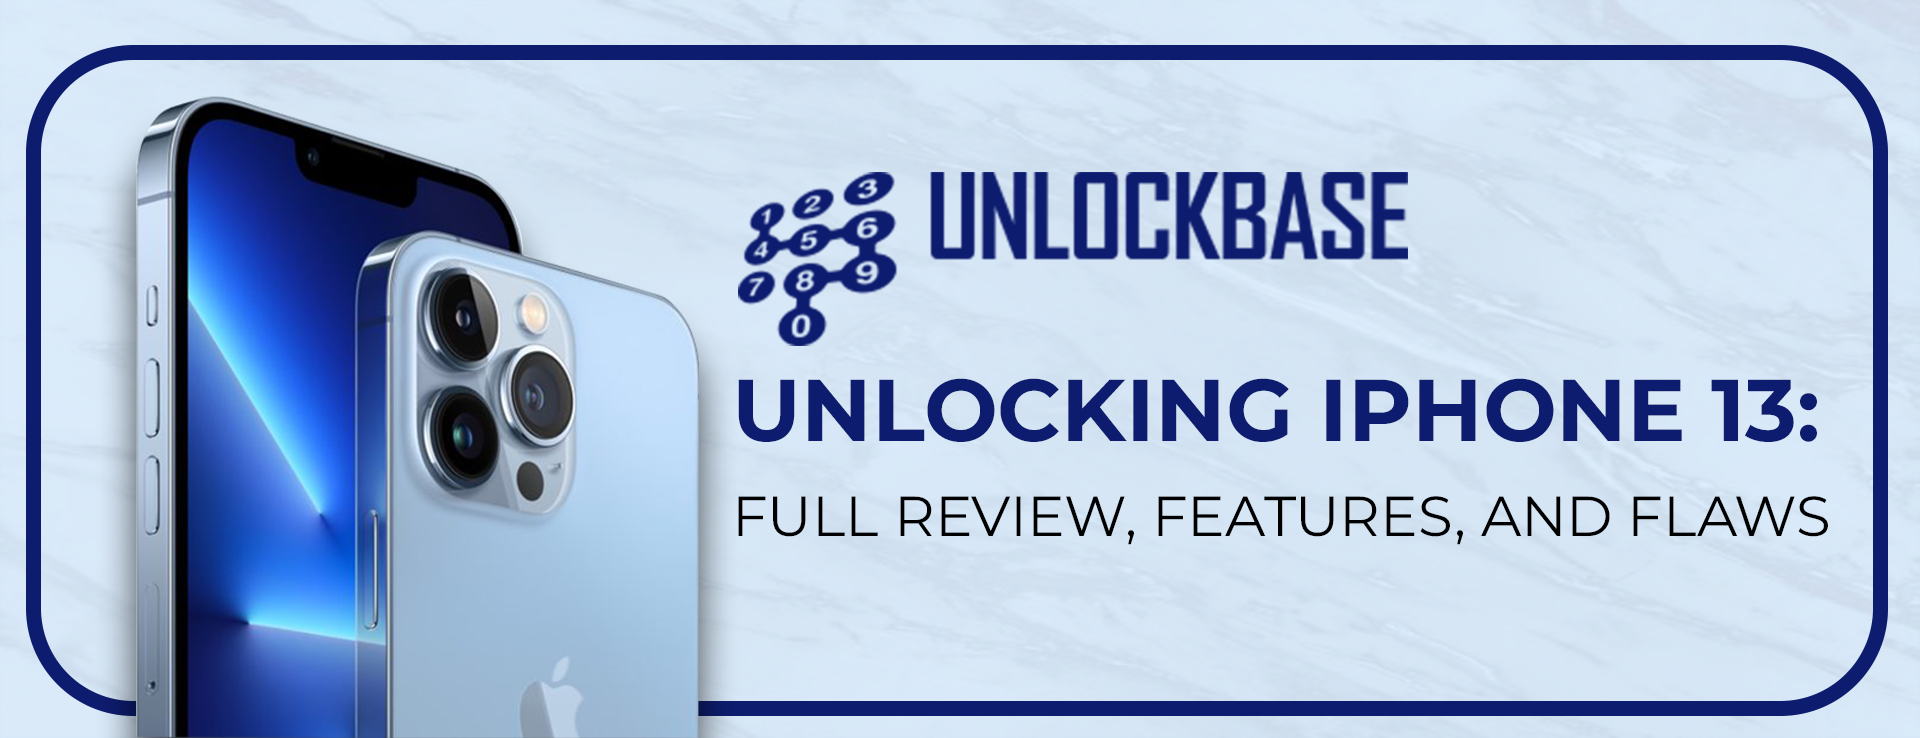 unlockbase rewier